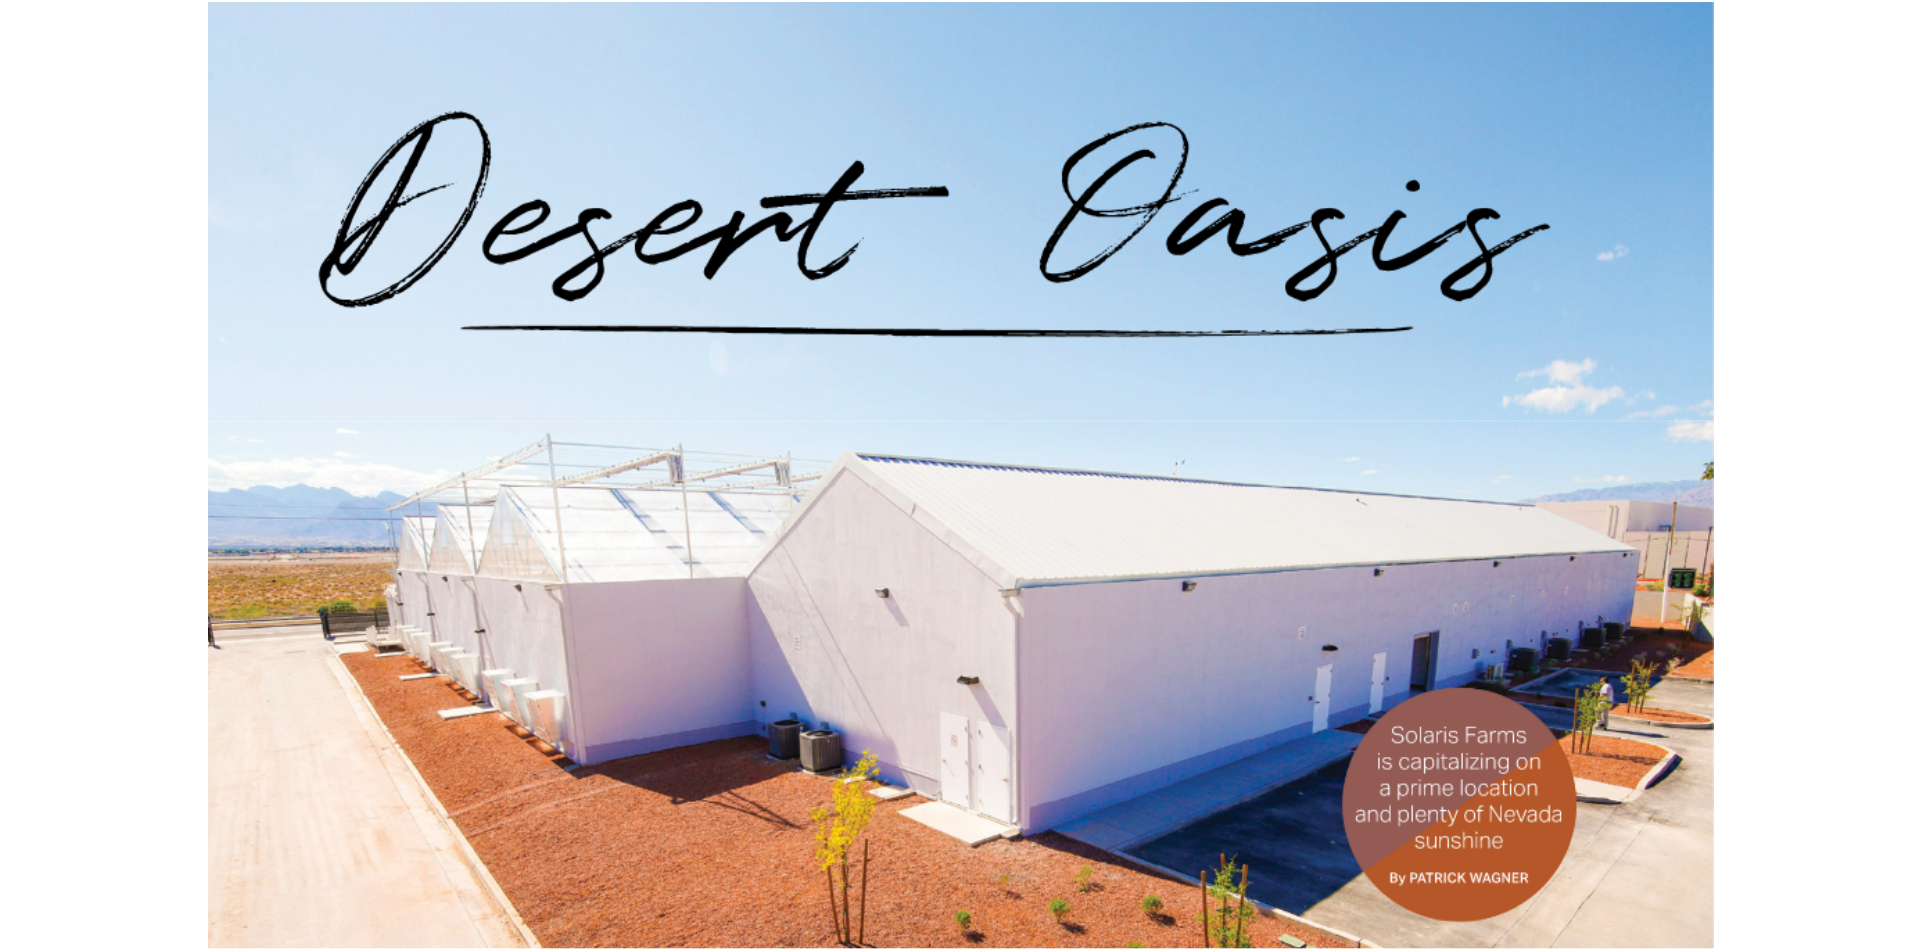 Desert Oasis | Solaris Farms profitiert von einer erstklassigen Lage und viel Sonne in Nevada (Seite 58-61 der Novemberausgabe)